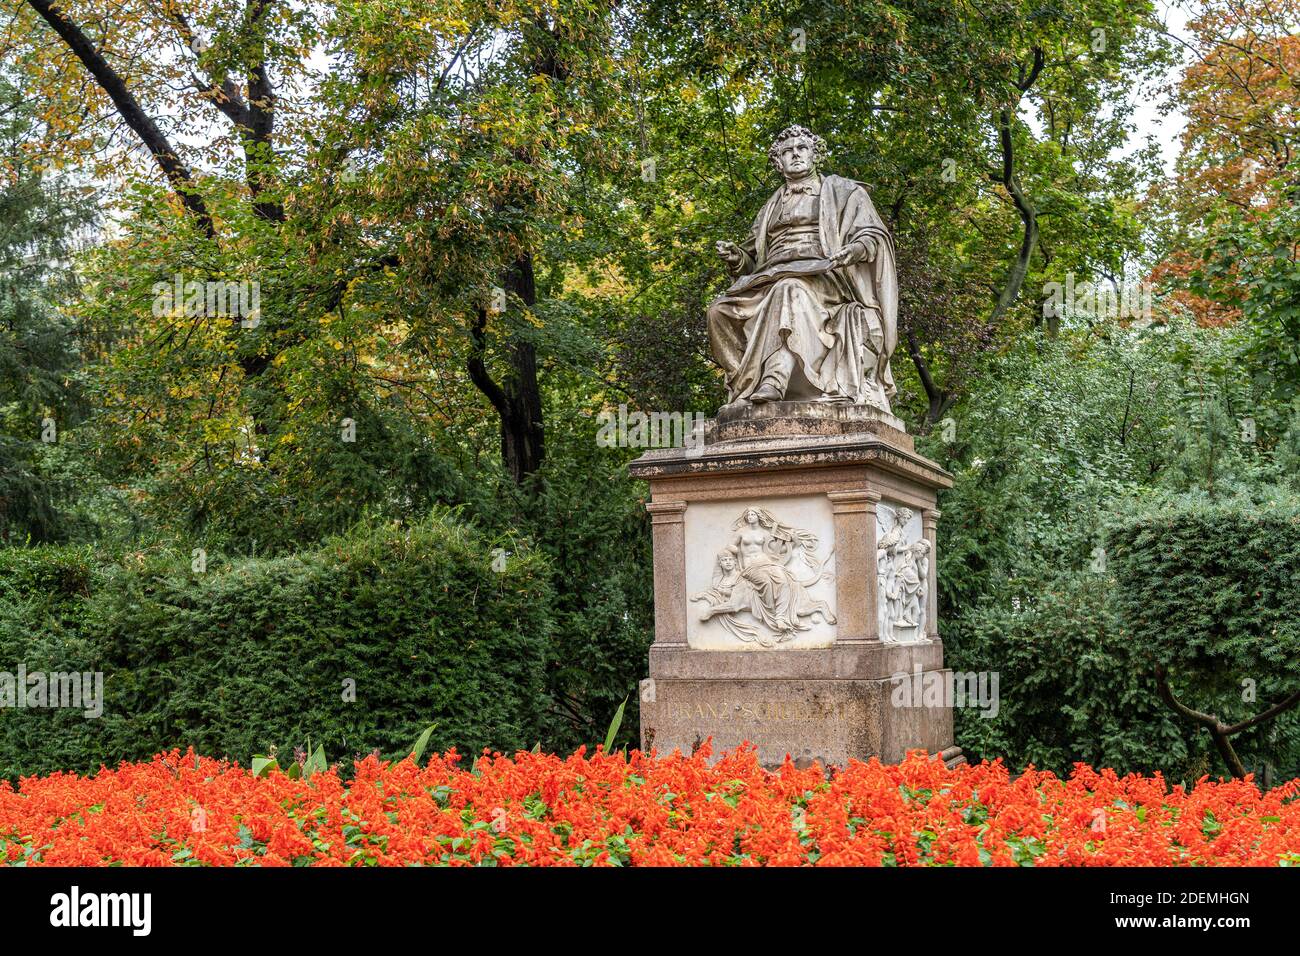 Franz Schubert Denkmal im Stadtpark à Wien, Österreich, Europa | la statue Franz Schubert dans le parc de Stadtpark, Vienne, Autriche, Europe Banque D'Images